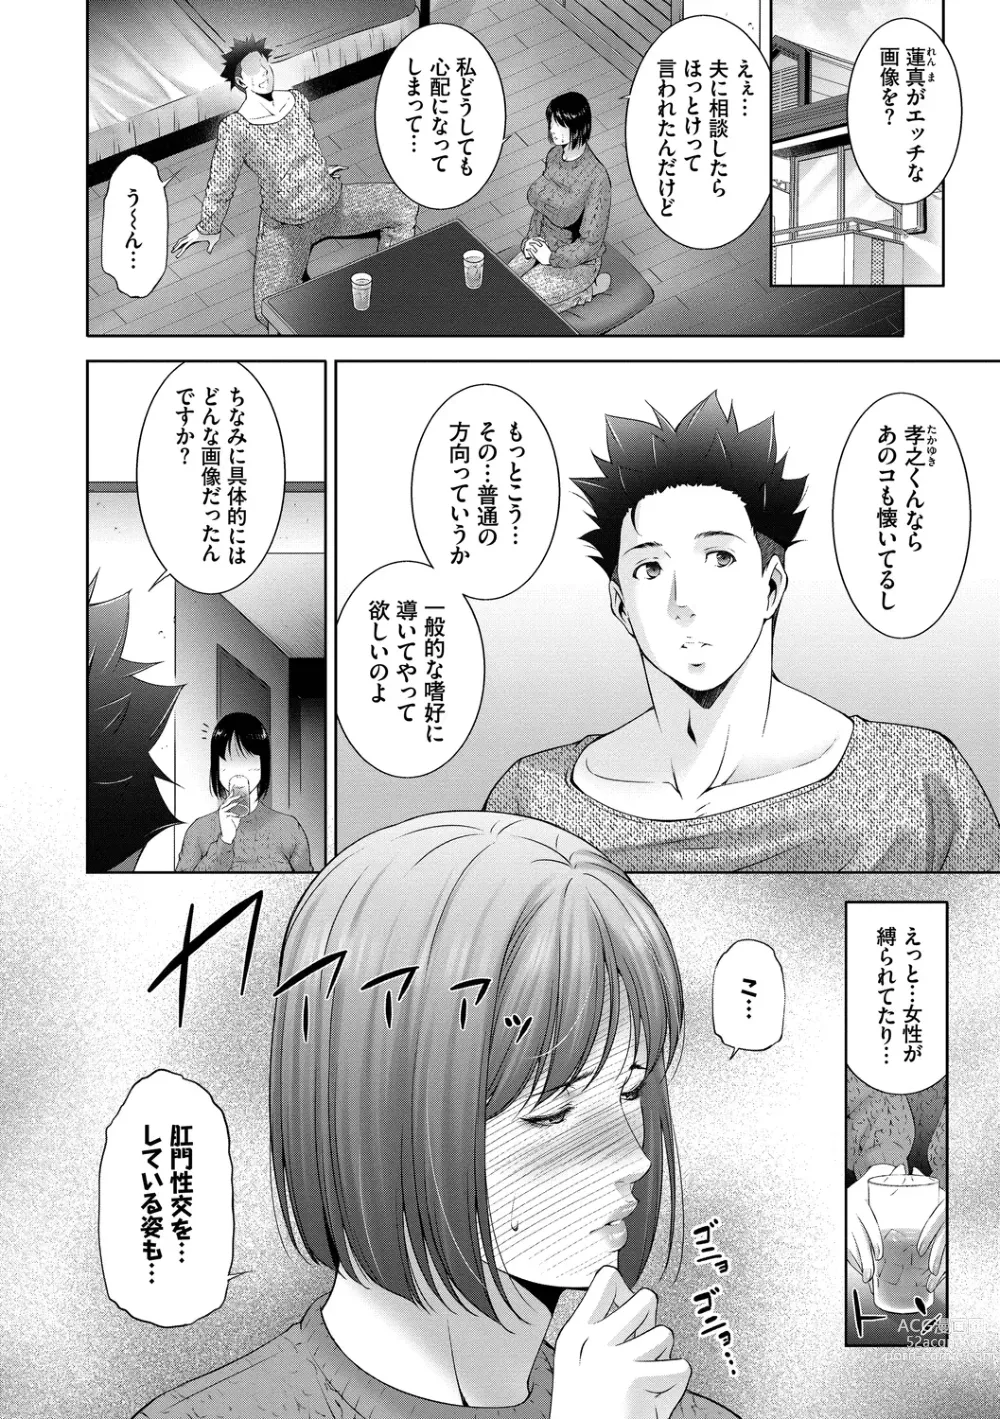 Page 4 of manga Lust Maternity